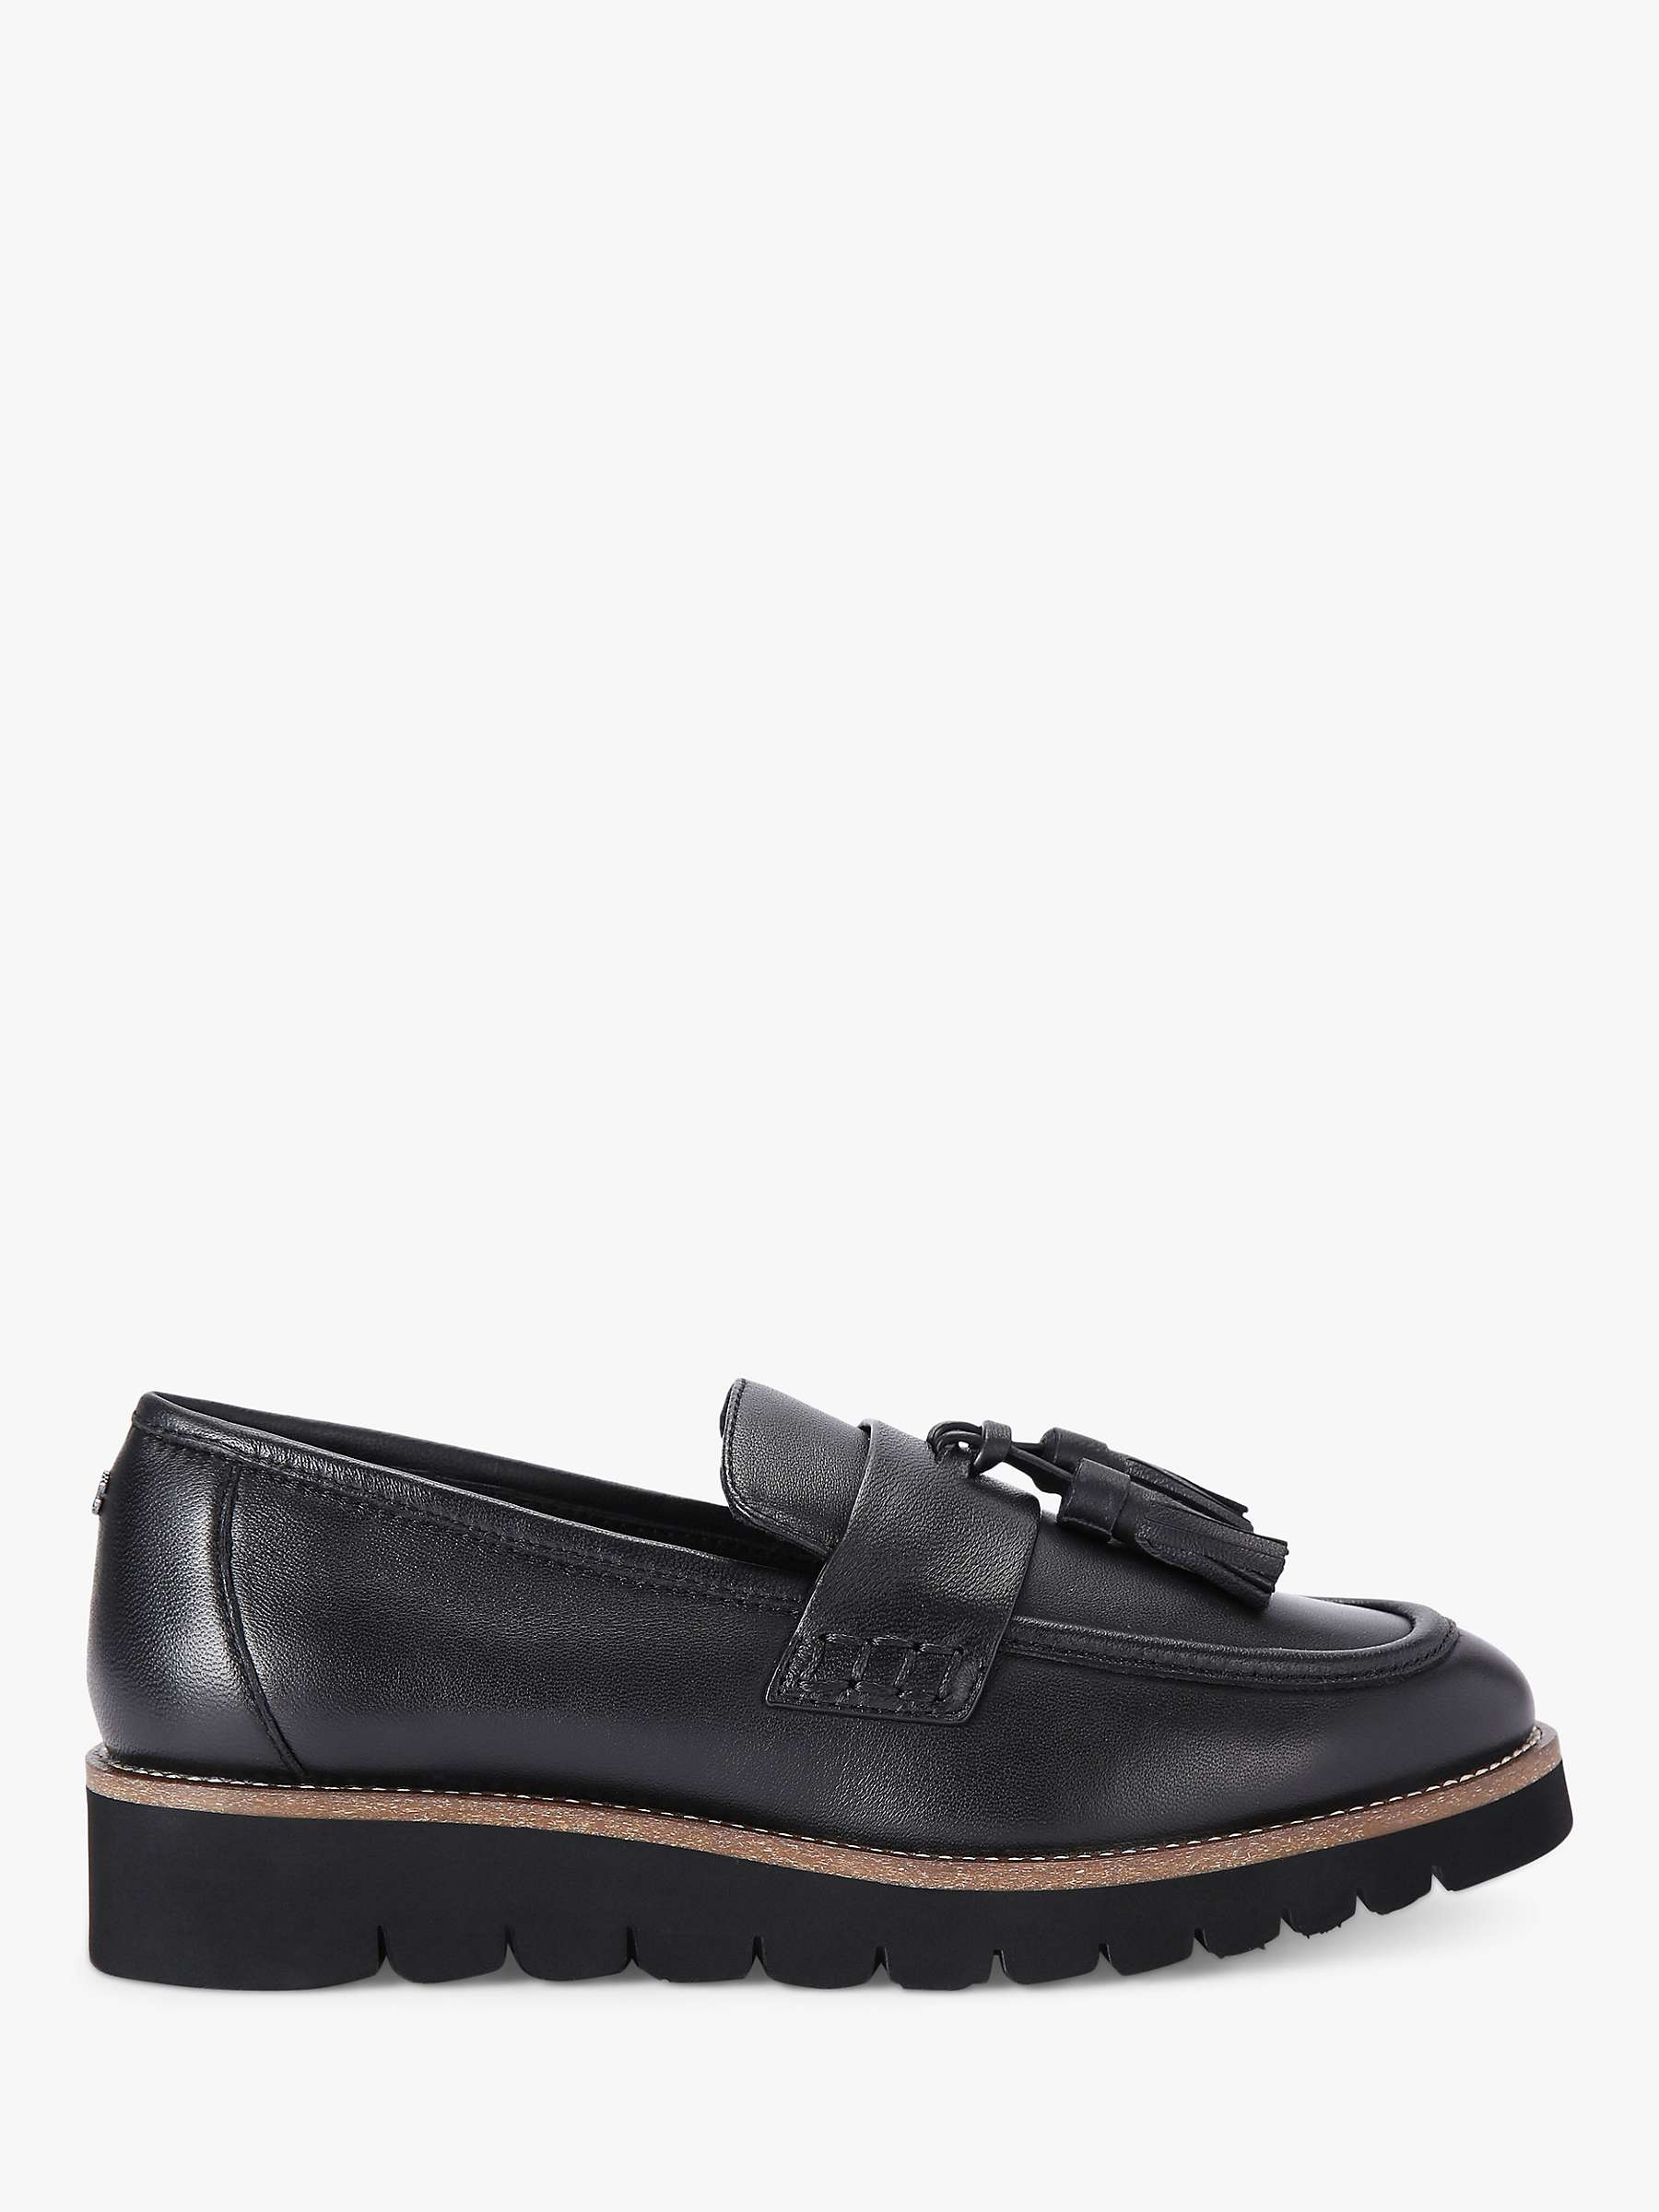 Buy Carvela Grange Leather Loafers, Black Online at johnlewis.com